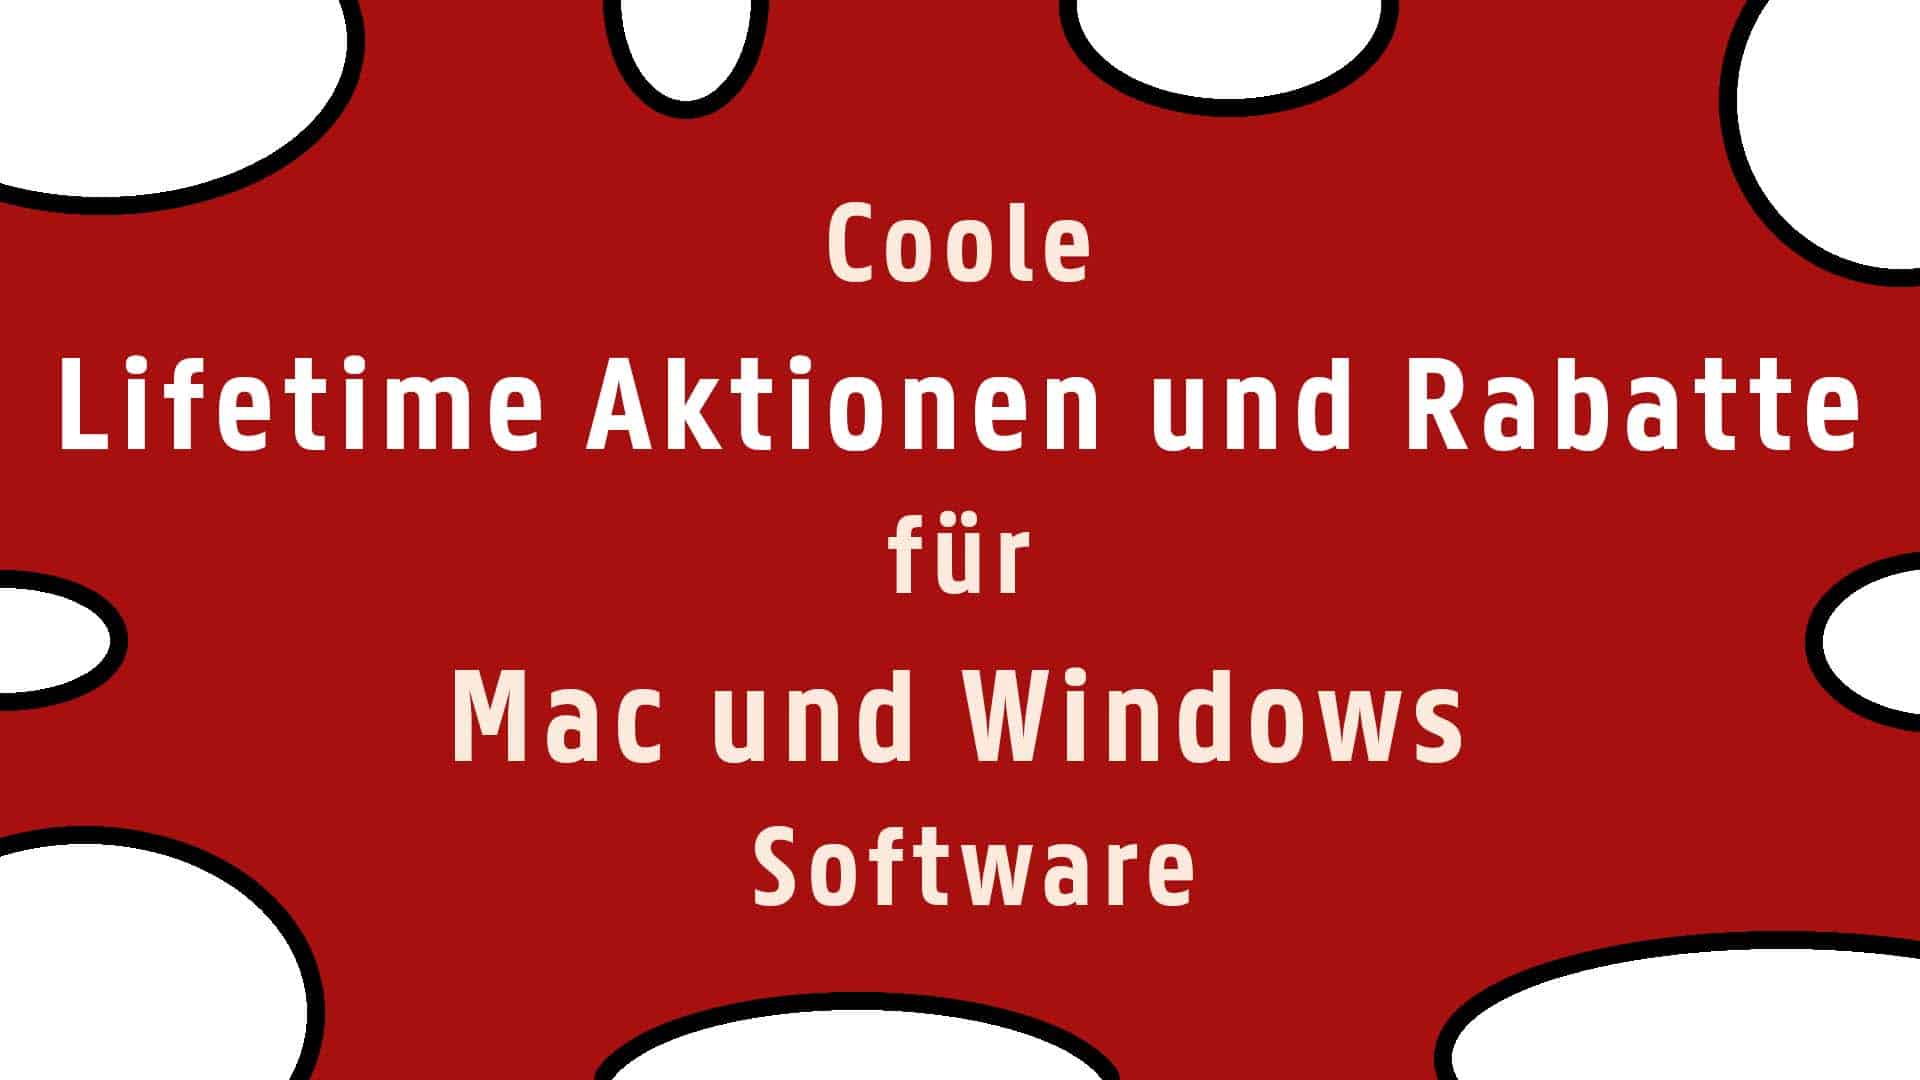 Coole Lifetime Aktionen und Rabatte für Mac und Windows Software